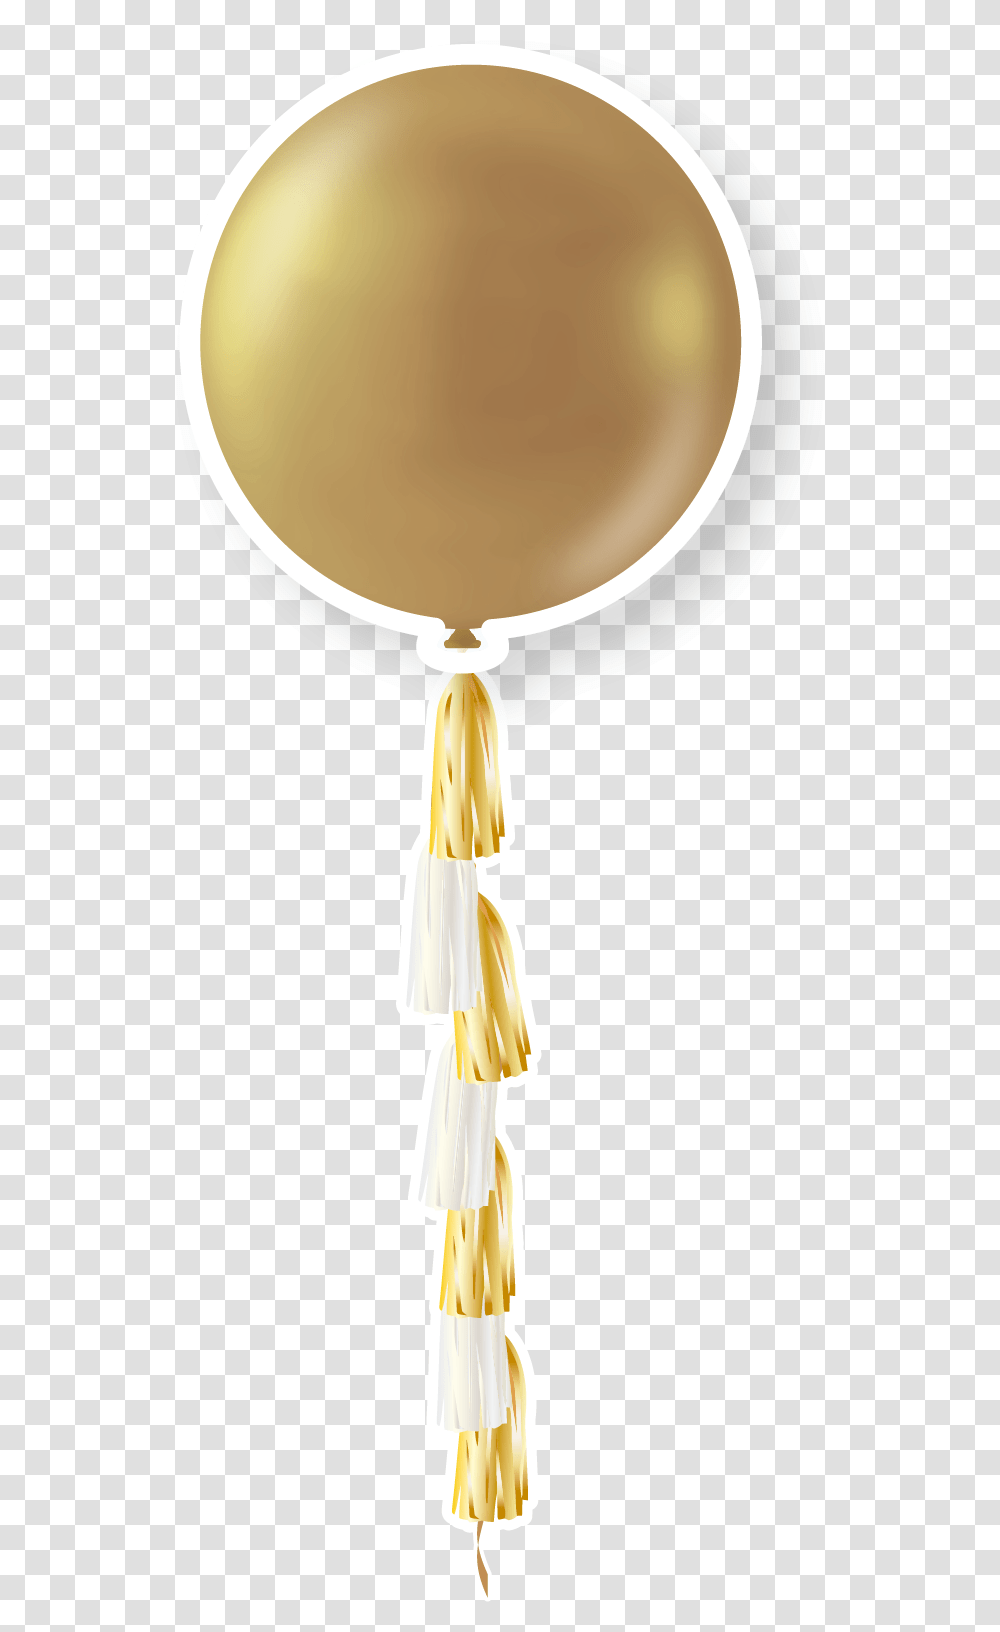 36 Golden Balloon, Lamp, Food, Apparel Transparent Png